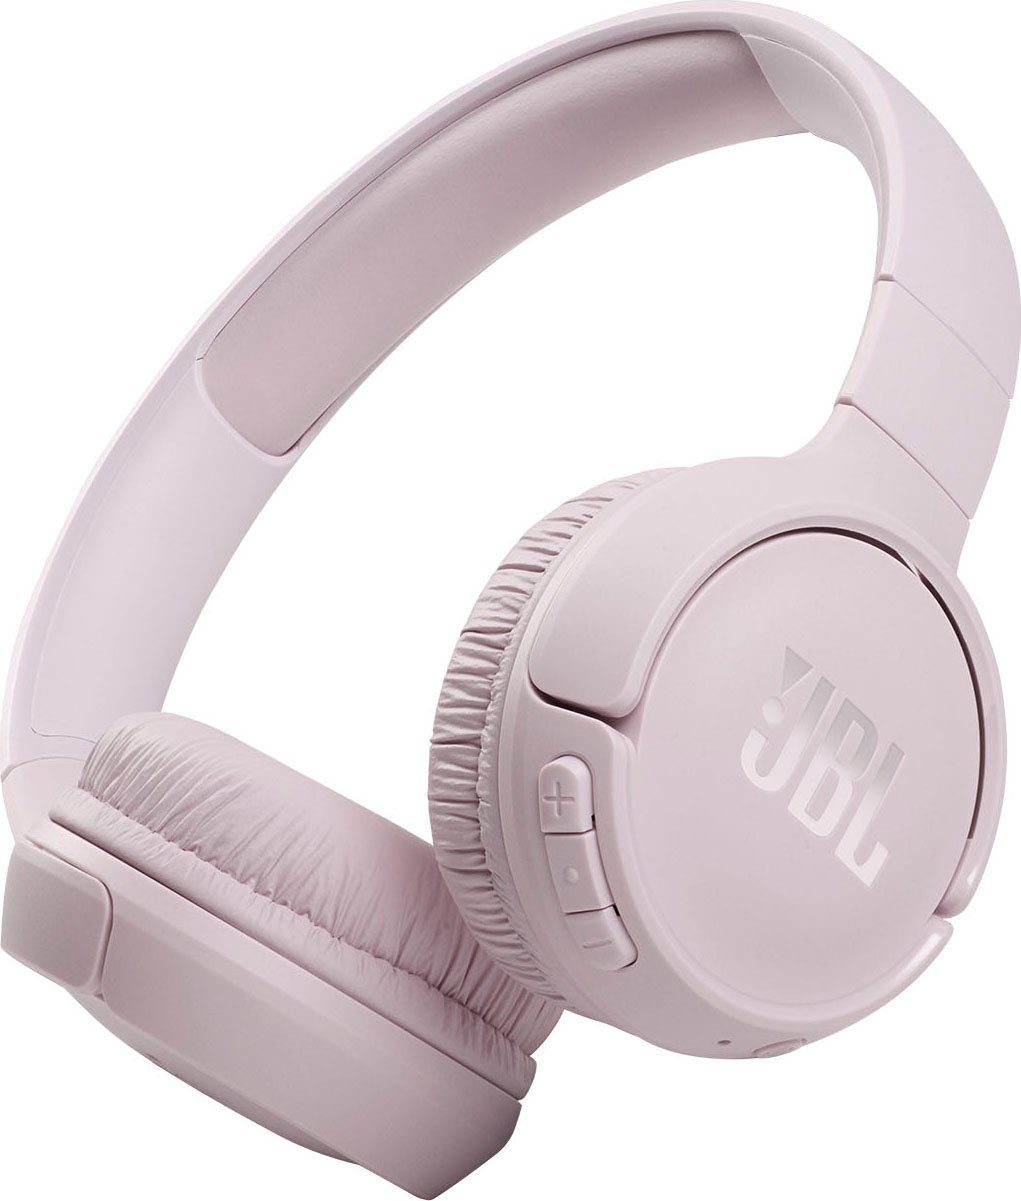 Getestete JBL Kopfhörer kaufen » JBL Kopfhörer Test | OTTO